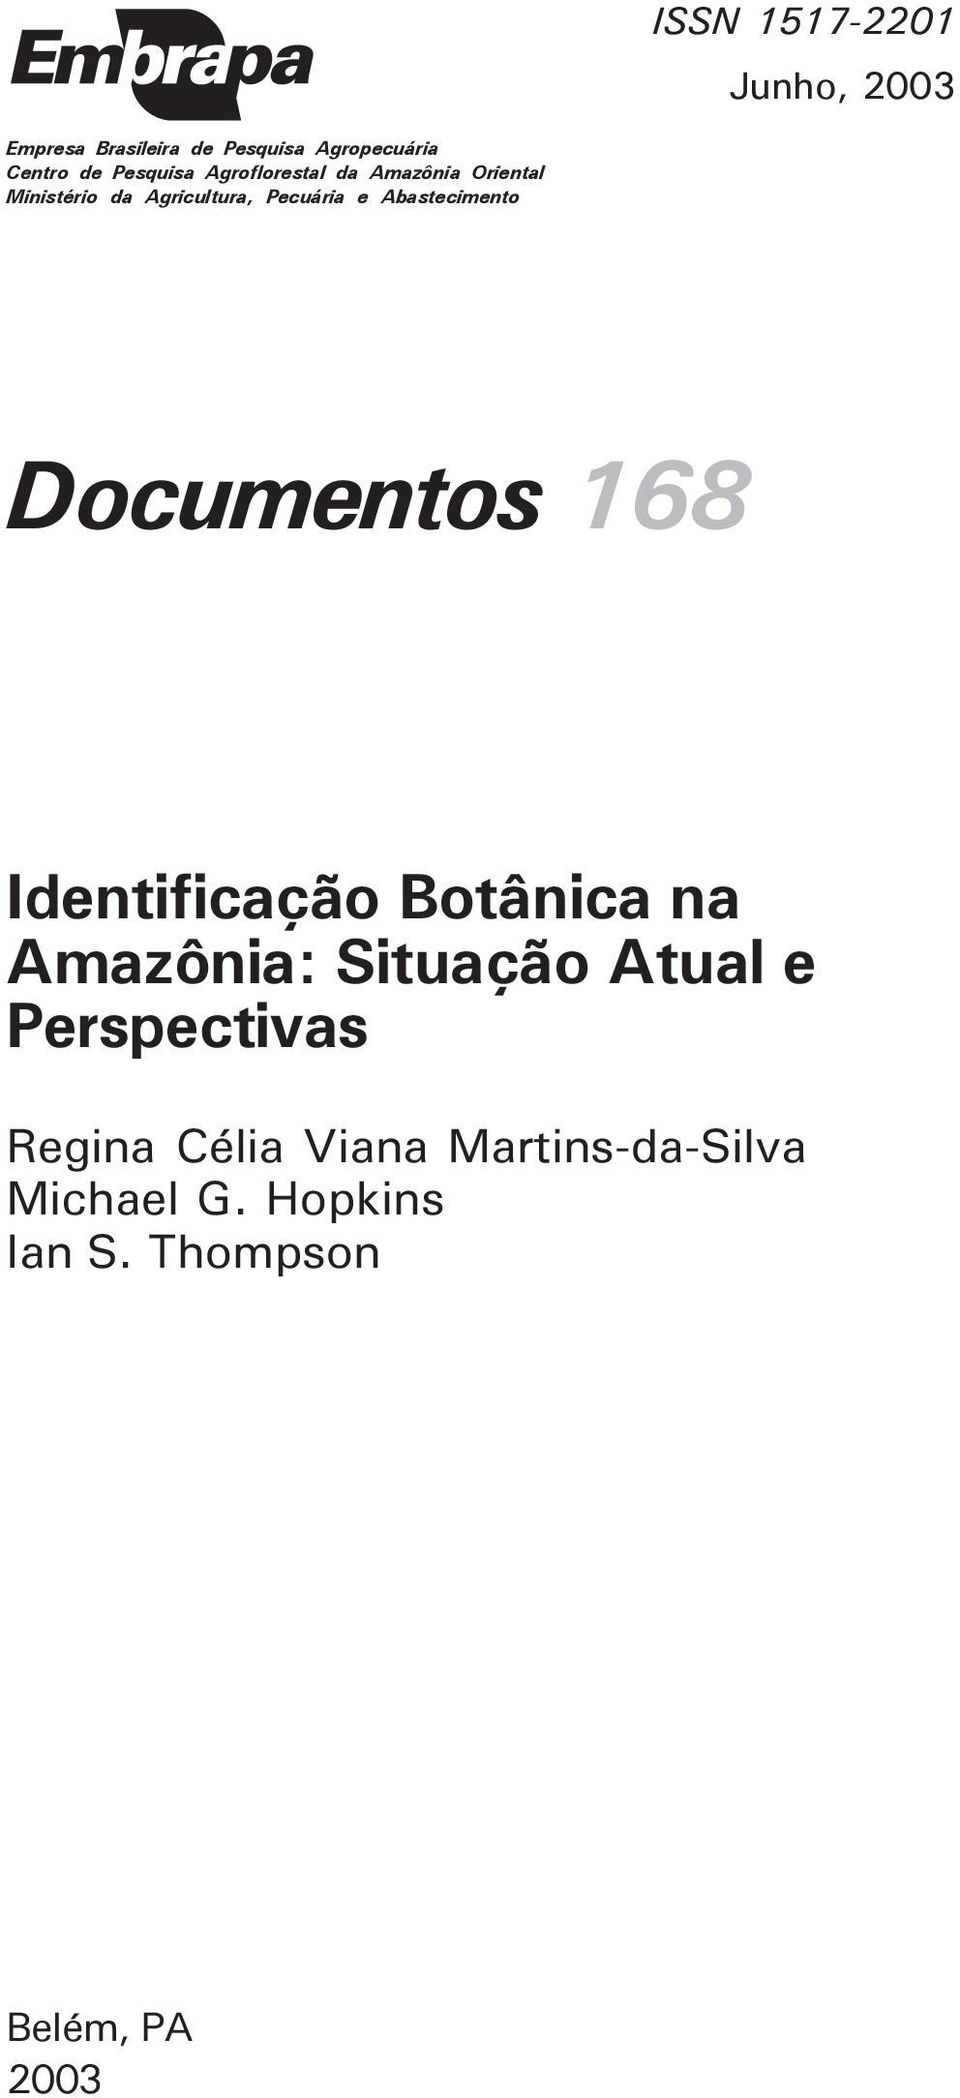 Abastecimento Documentos 168 Identificação Botânica na Amazônia: Situação Atual e